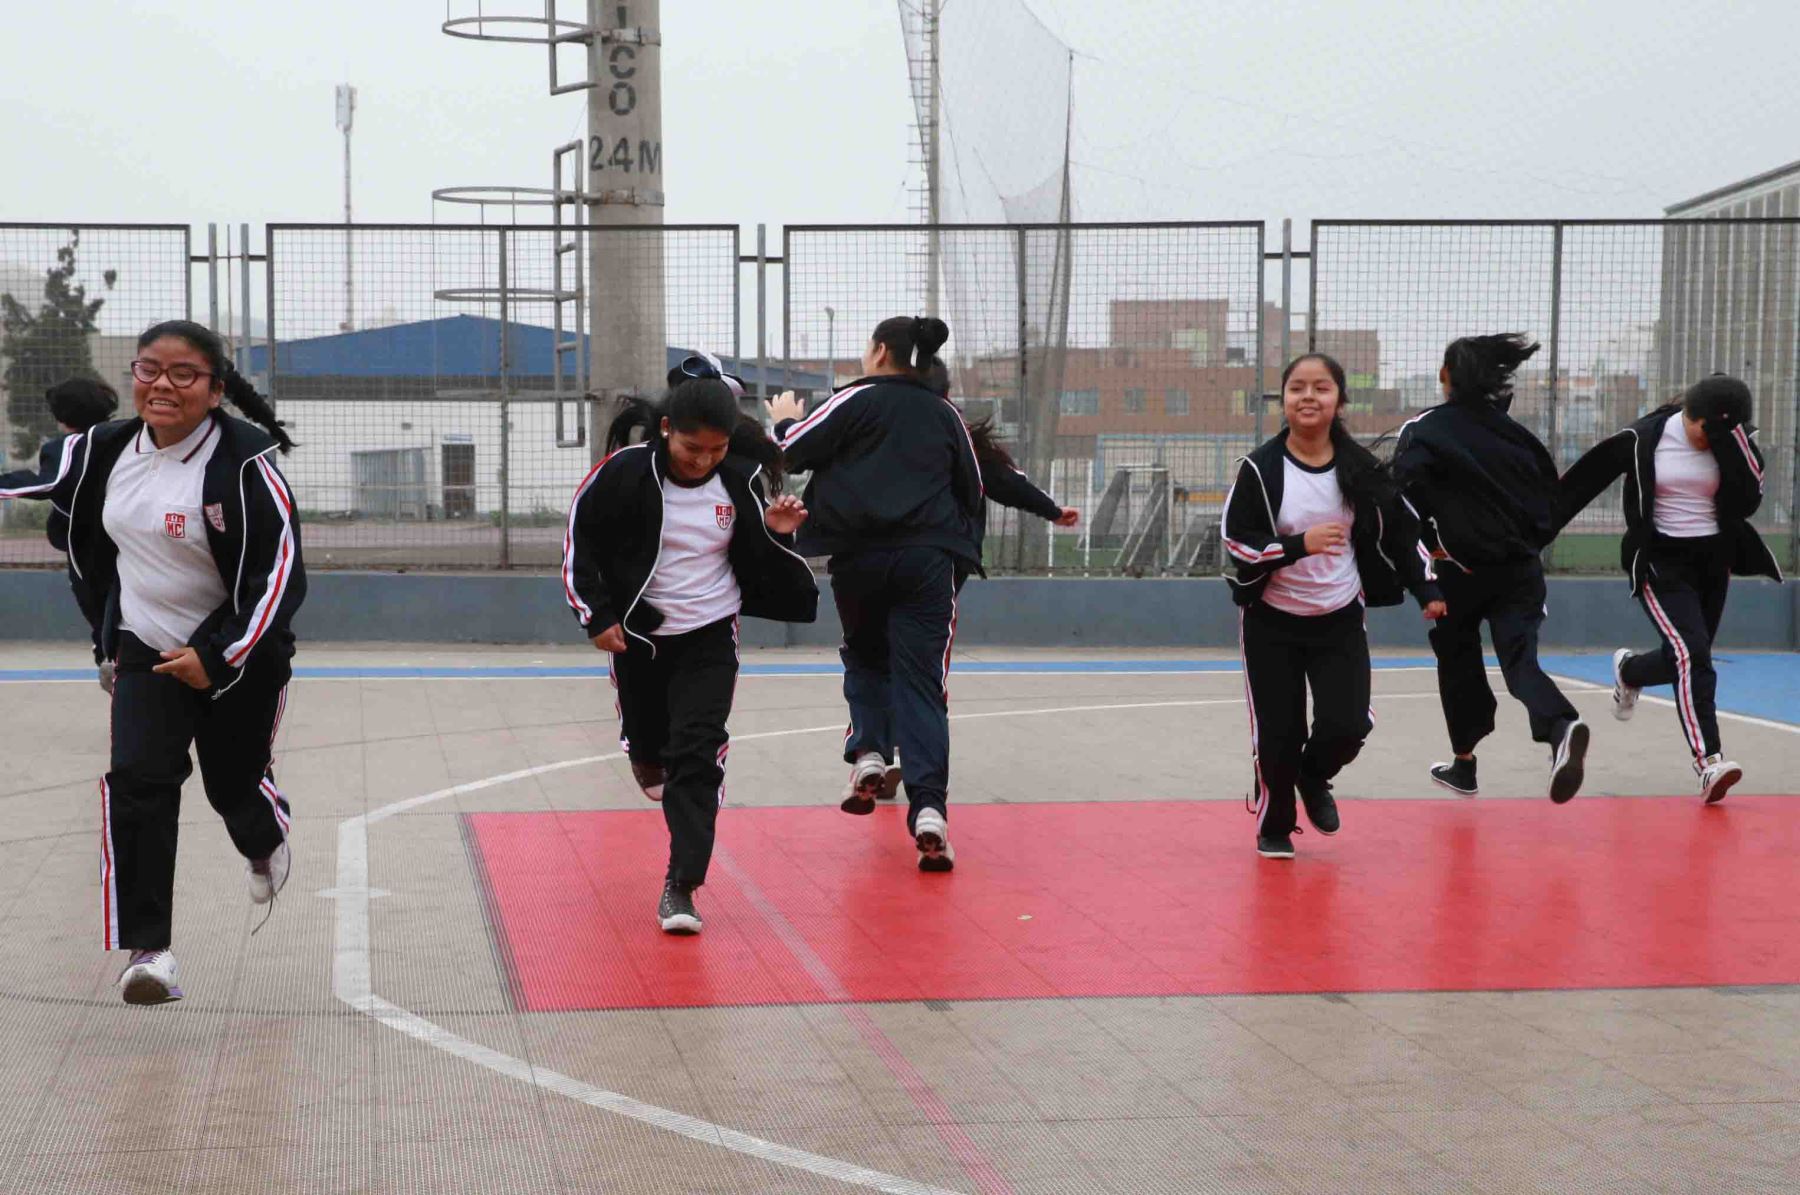 Diferentes colegios de Lima y Callao reanudaron hoy sus labores educativas con la presencia masiva de escolares y docentes. Foto: ANDINA/Norman Córdova